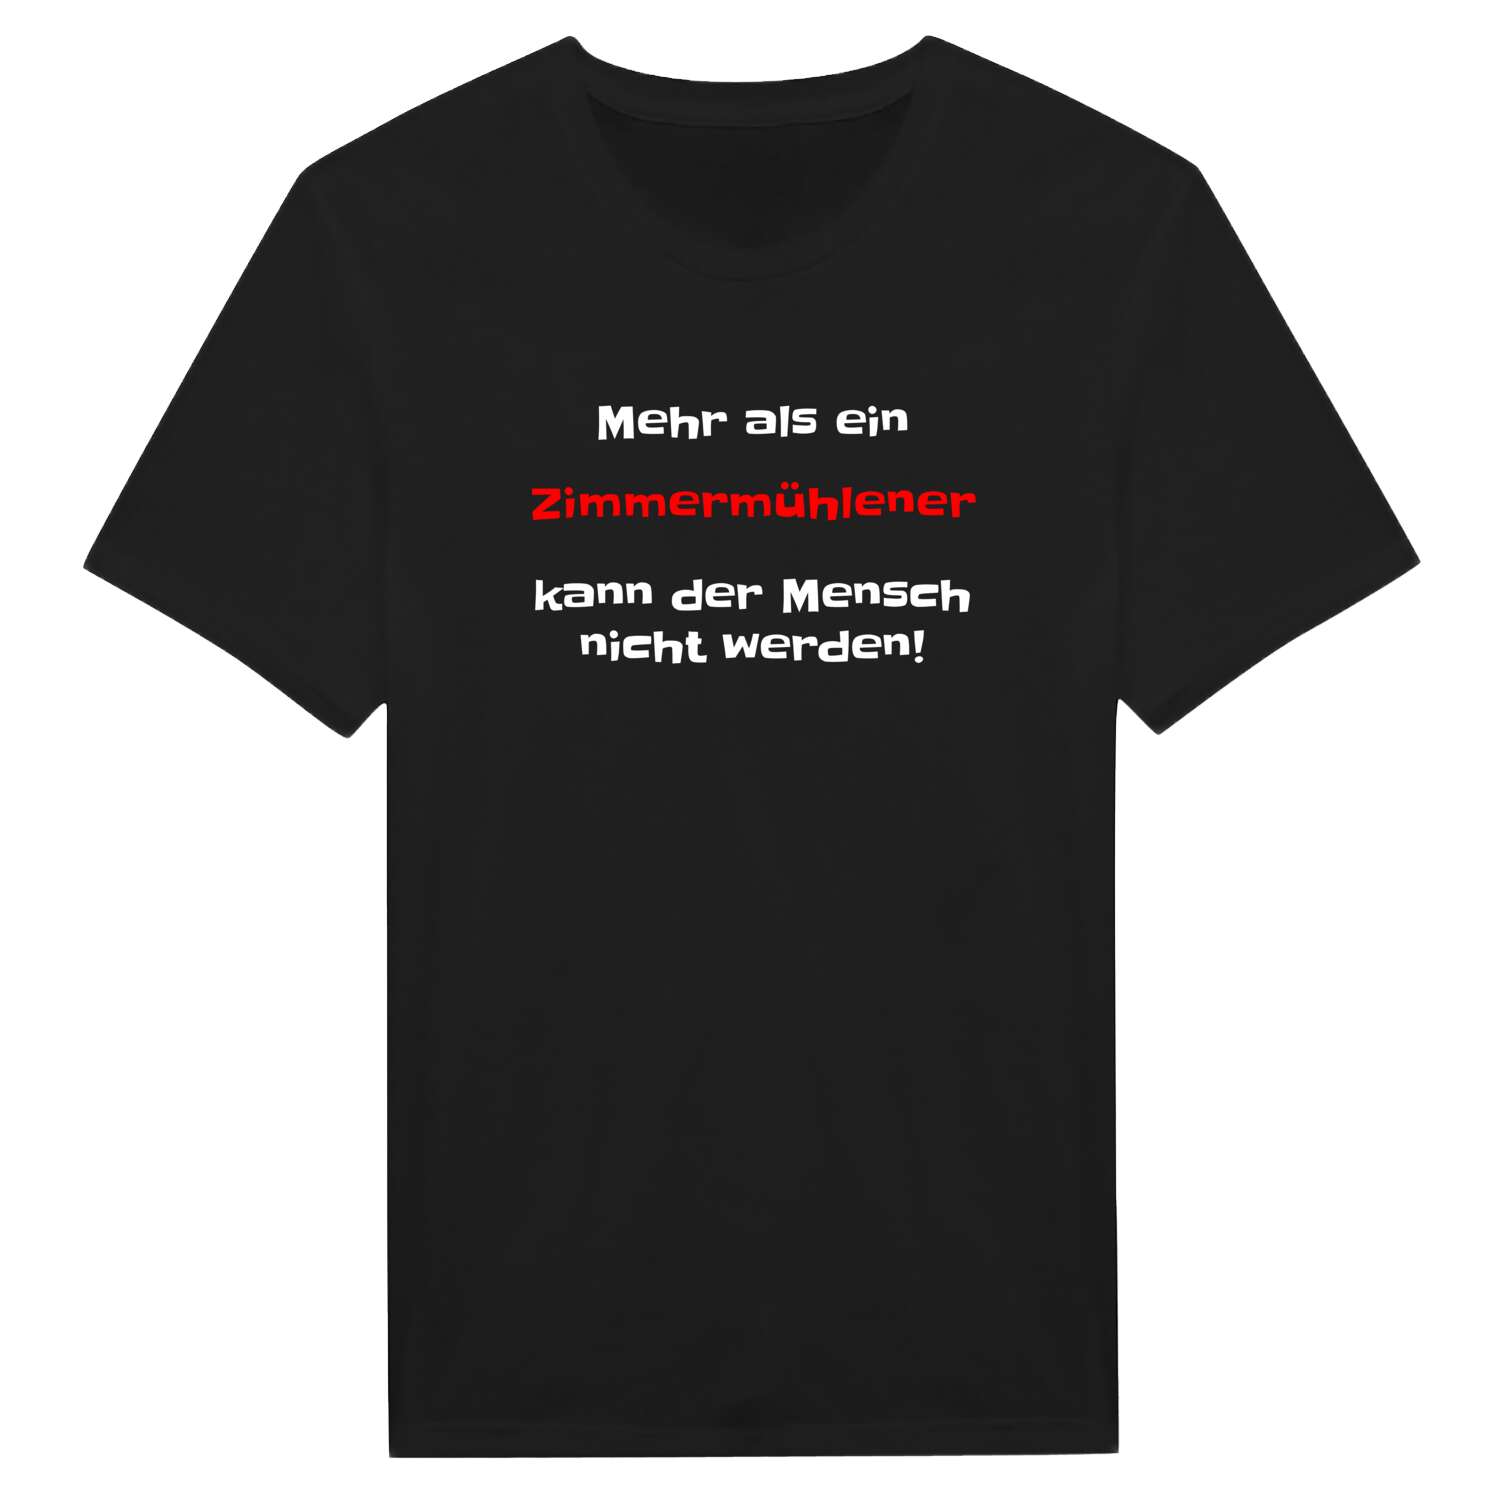 Zimmermühle T-Shirt »Mehr als ein«